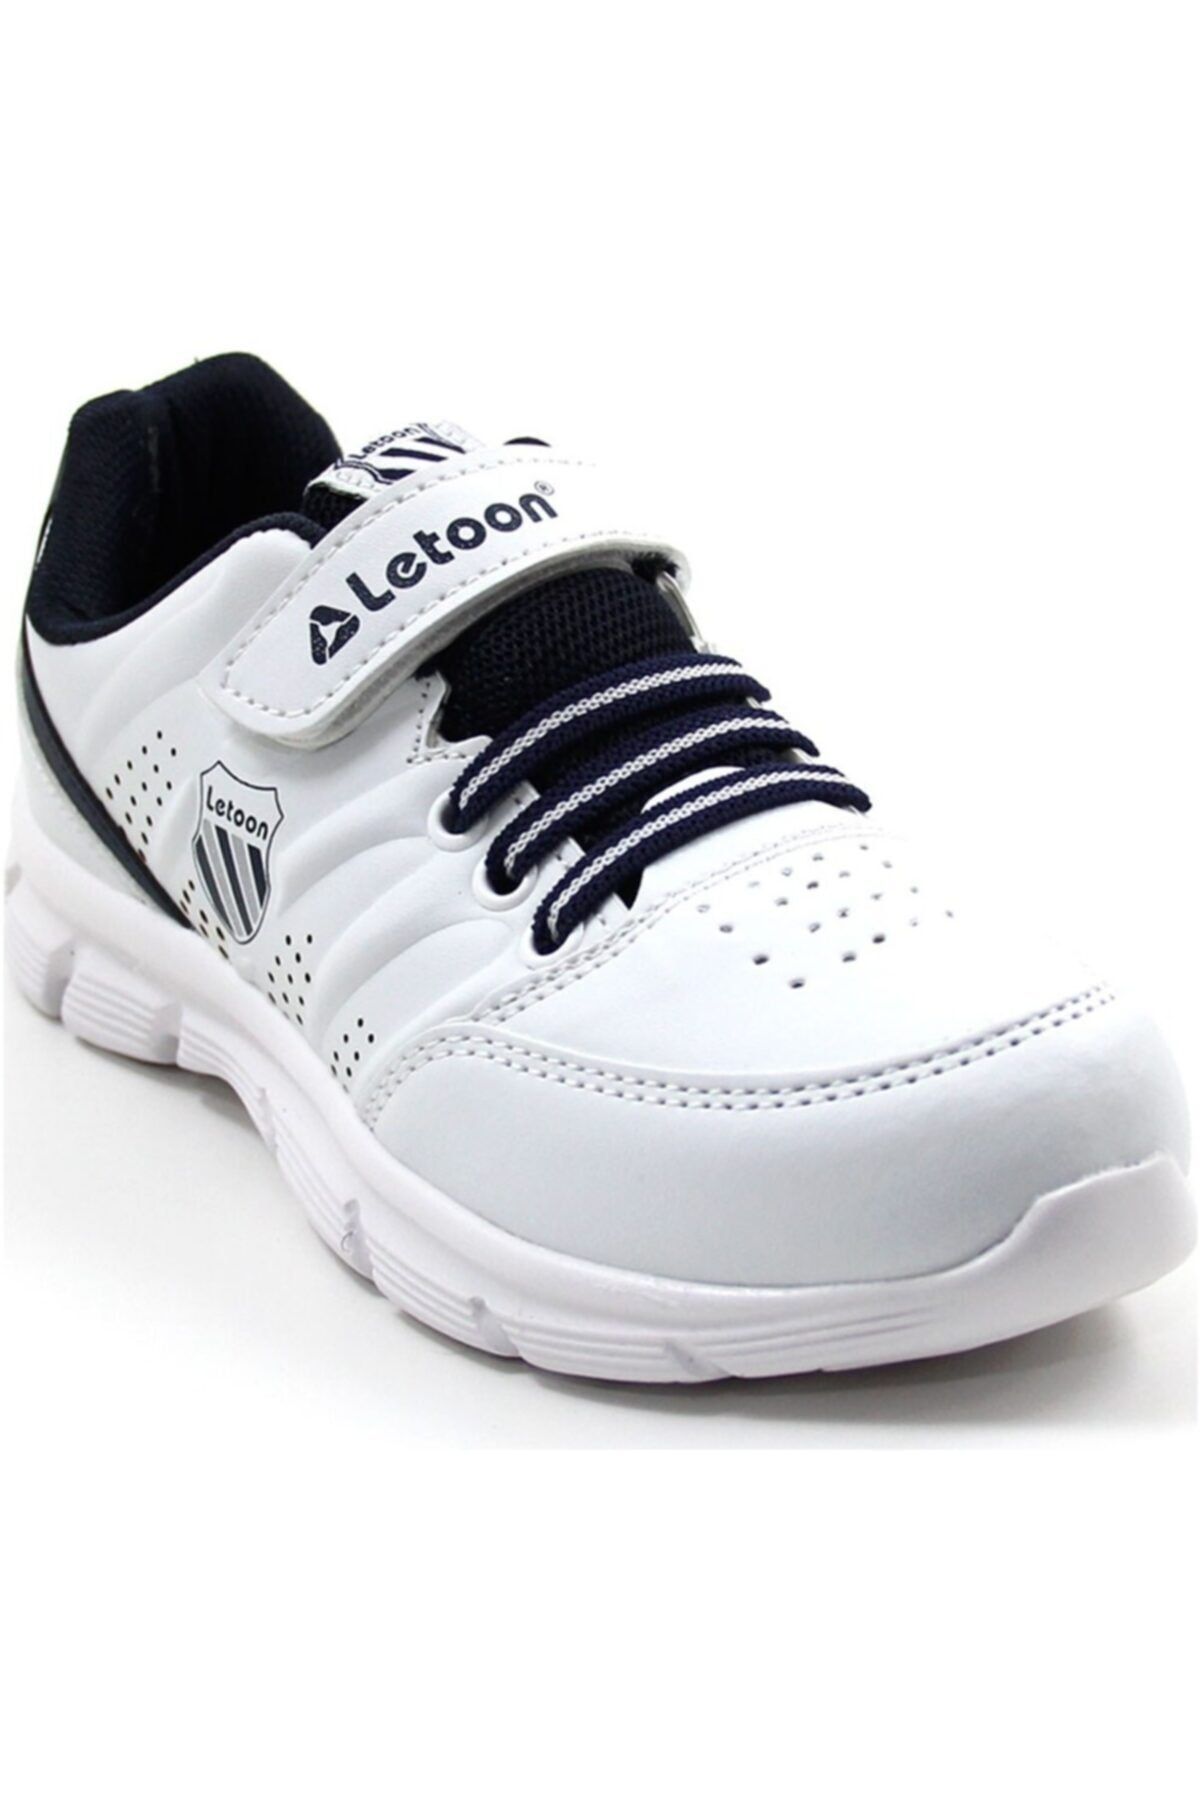 LETOON 2336 Beyaz Renk Çocuk Spor Ayakkabı